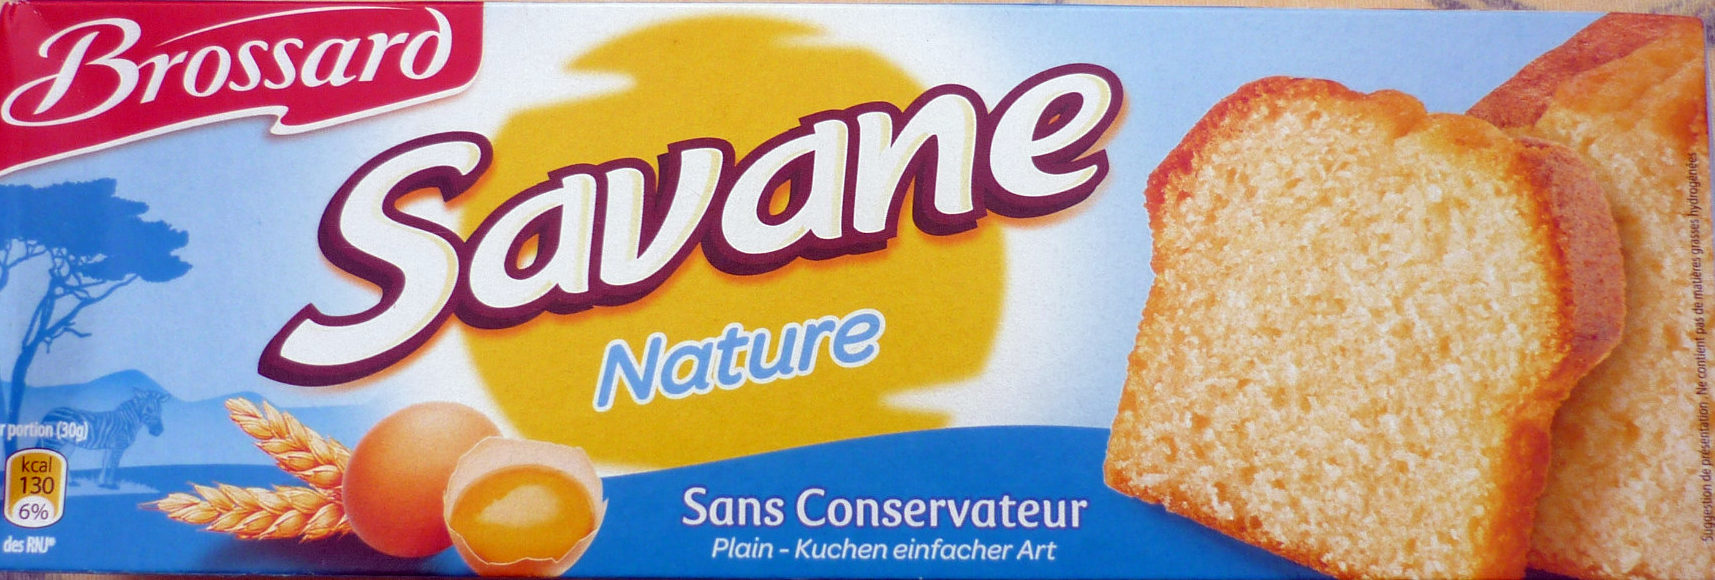 Savane Gateau yaourt Nature - Product - fr